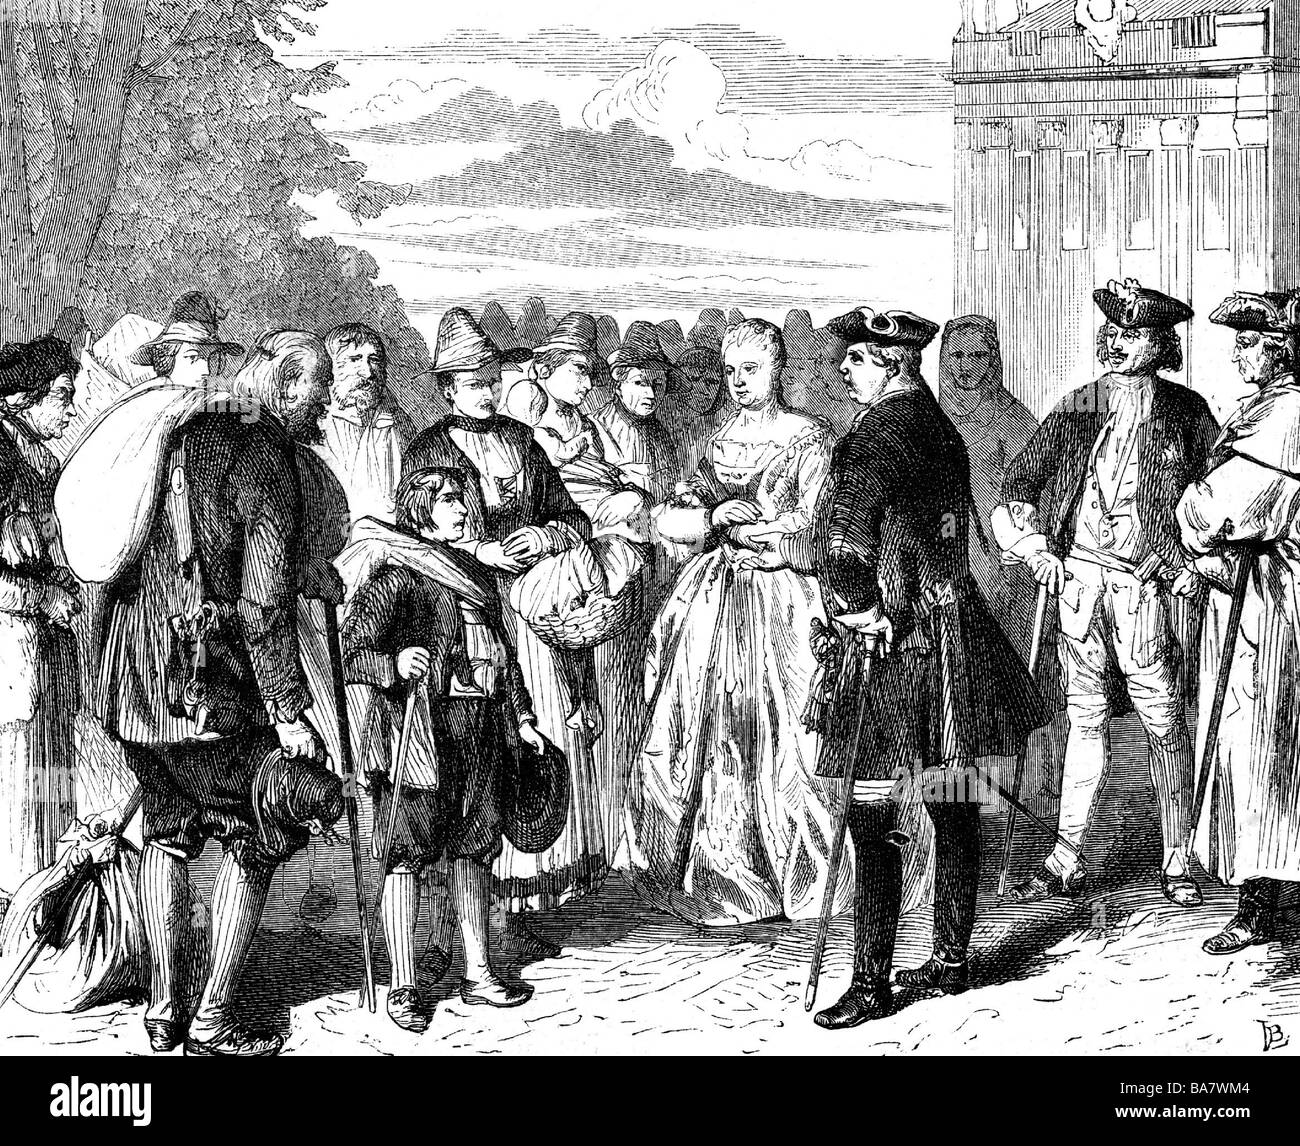 Frederick William I, 14.8.1688 - 31.5.1740, roi en Prusse 25.2.1713 - 31.5.1740, longueur complète, accueillant des immigrants de Salzbourg à Potsdam, 1732, gravure en bois, XIXe siècle, Banque D'Images